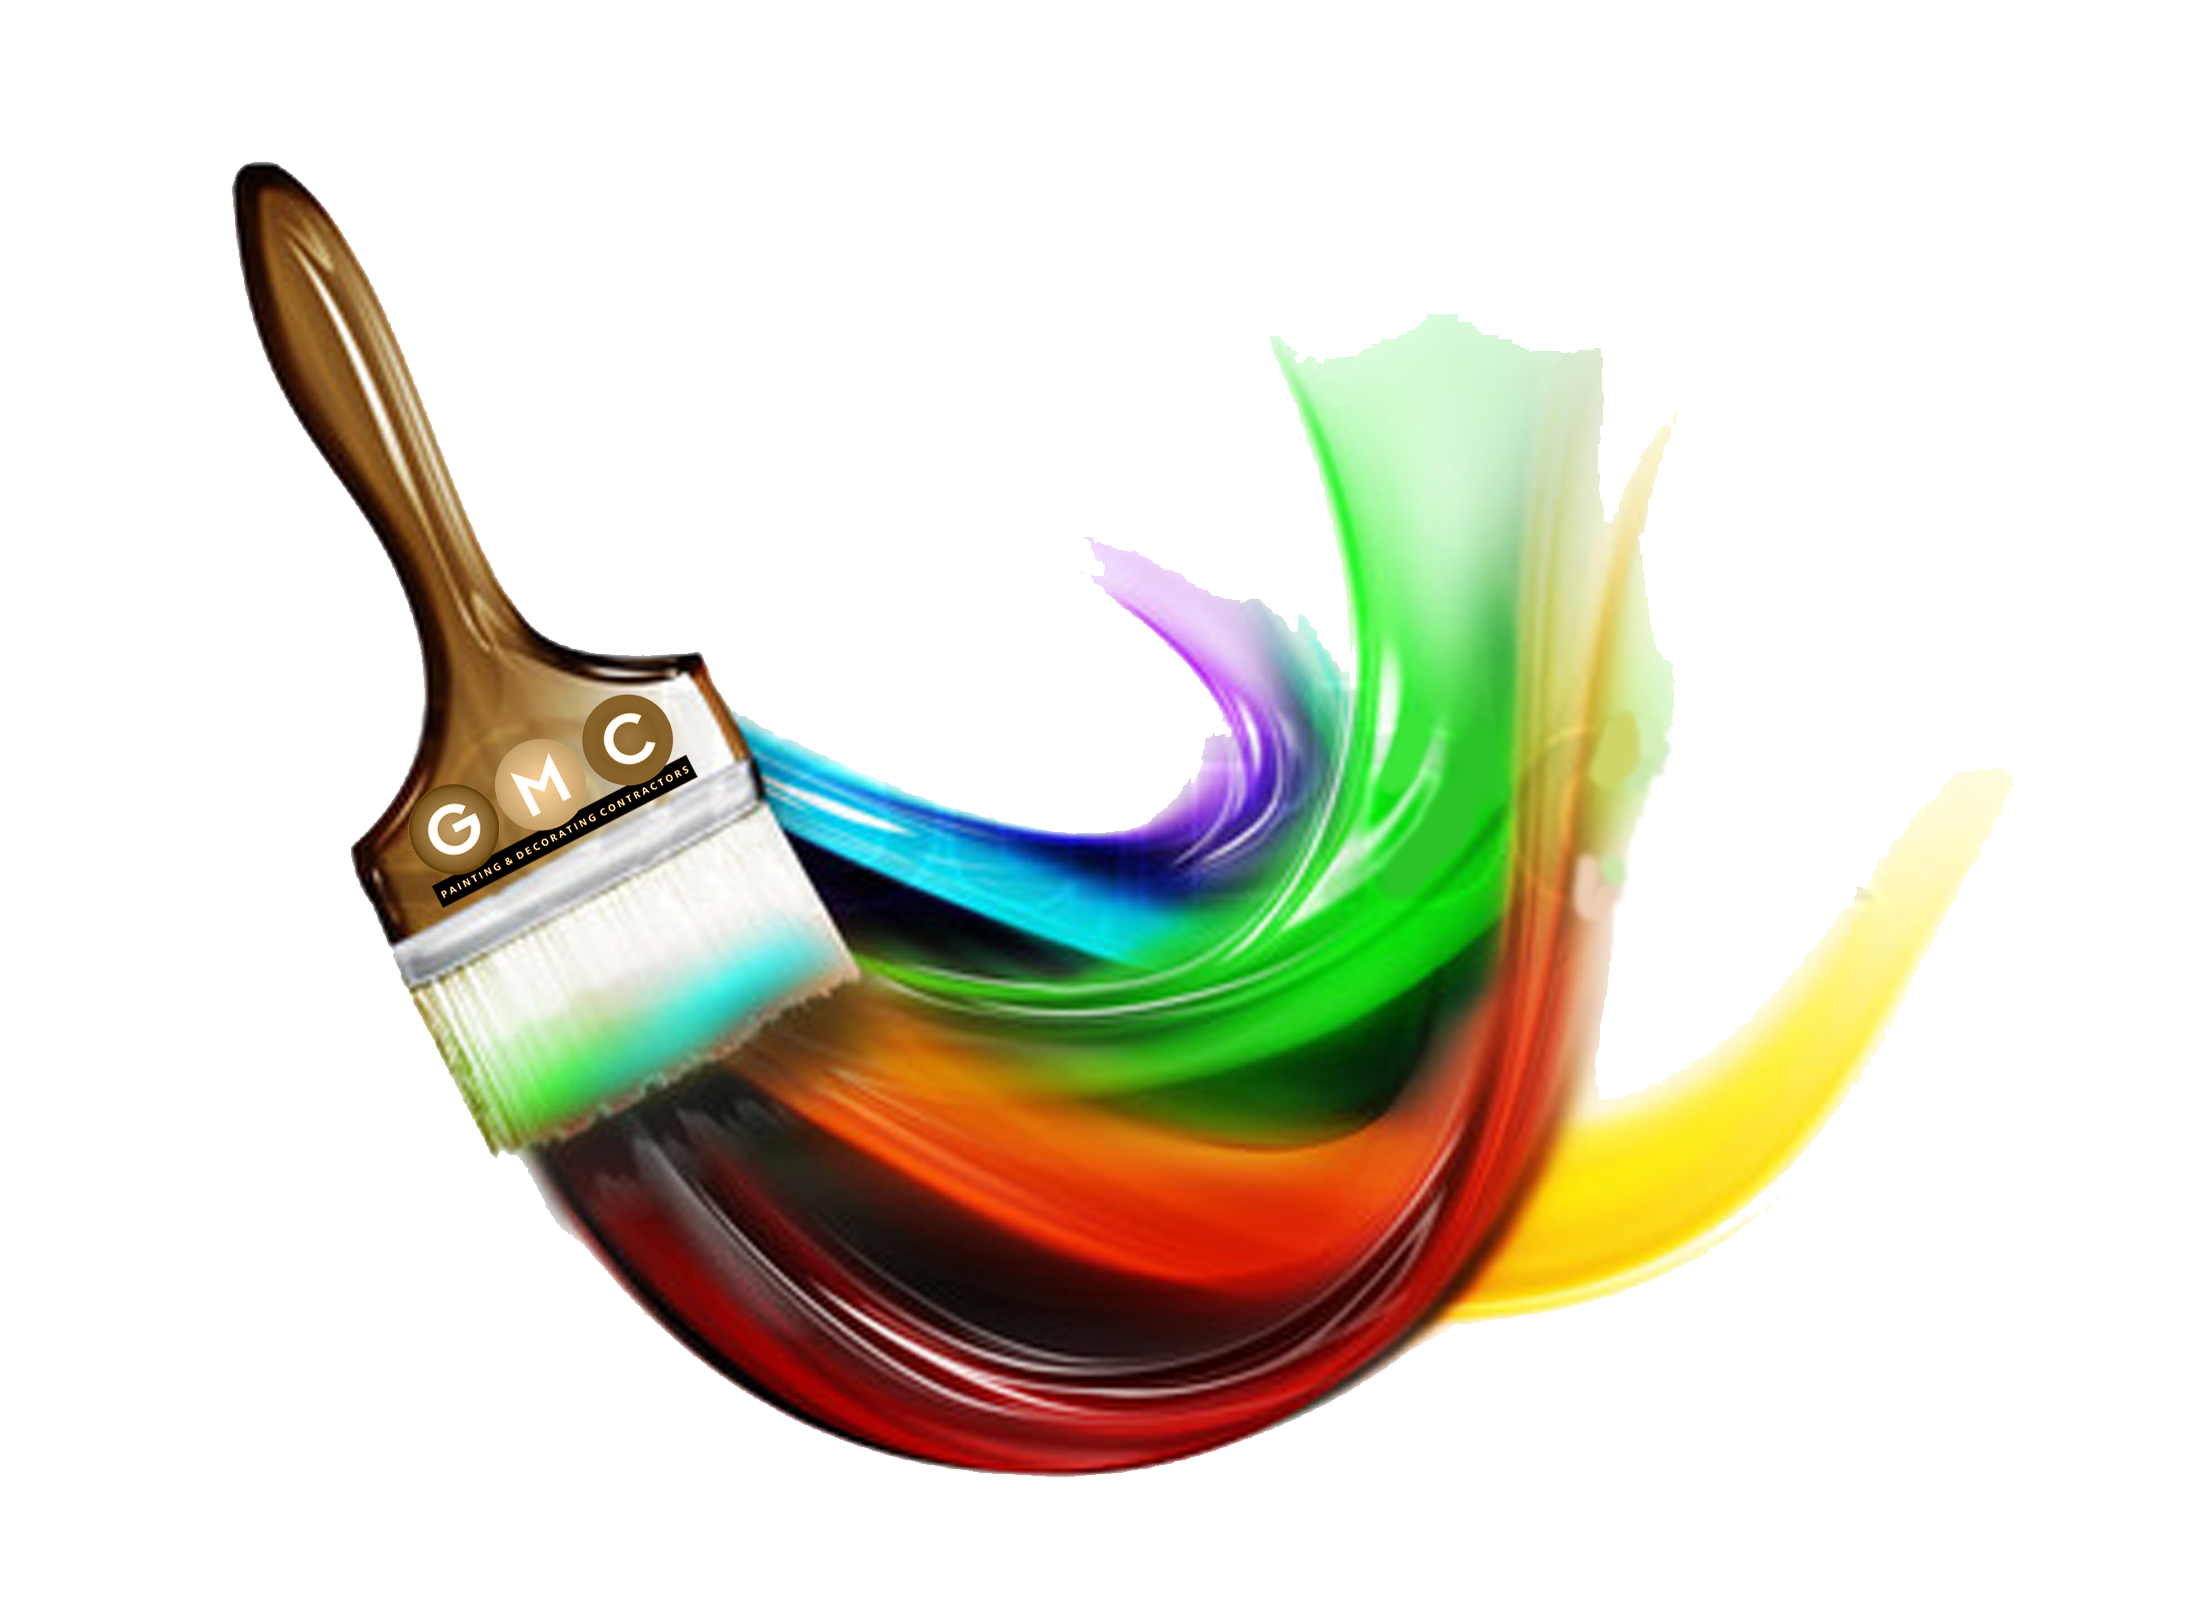 paint brush stroke logo